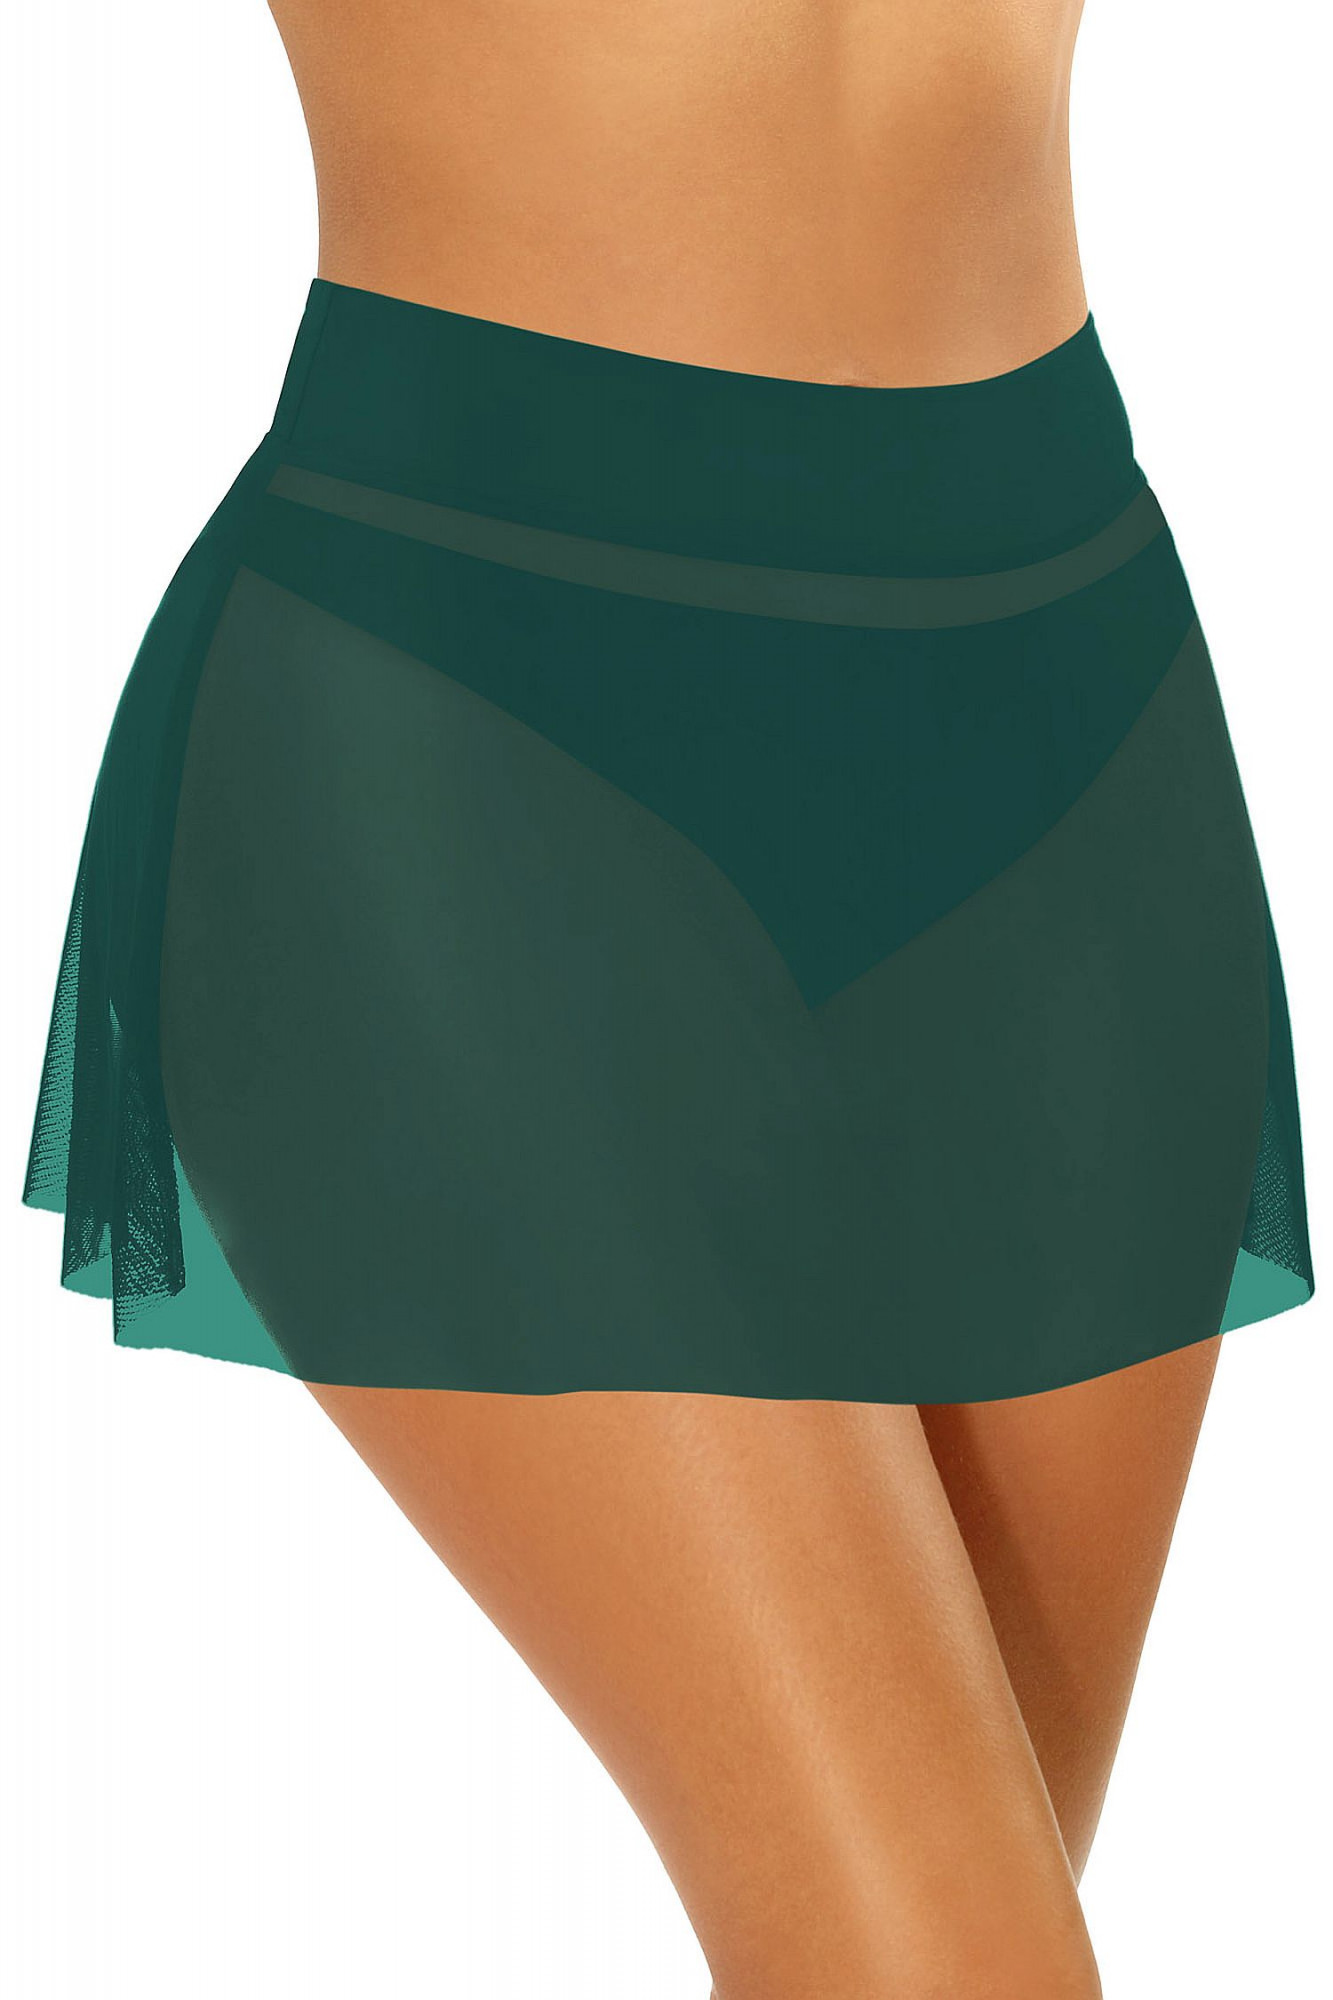 Dámská plážová sukně Skirt4 D98B - 7 tm. zelená - Self 40